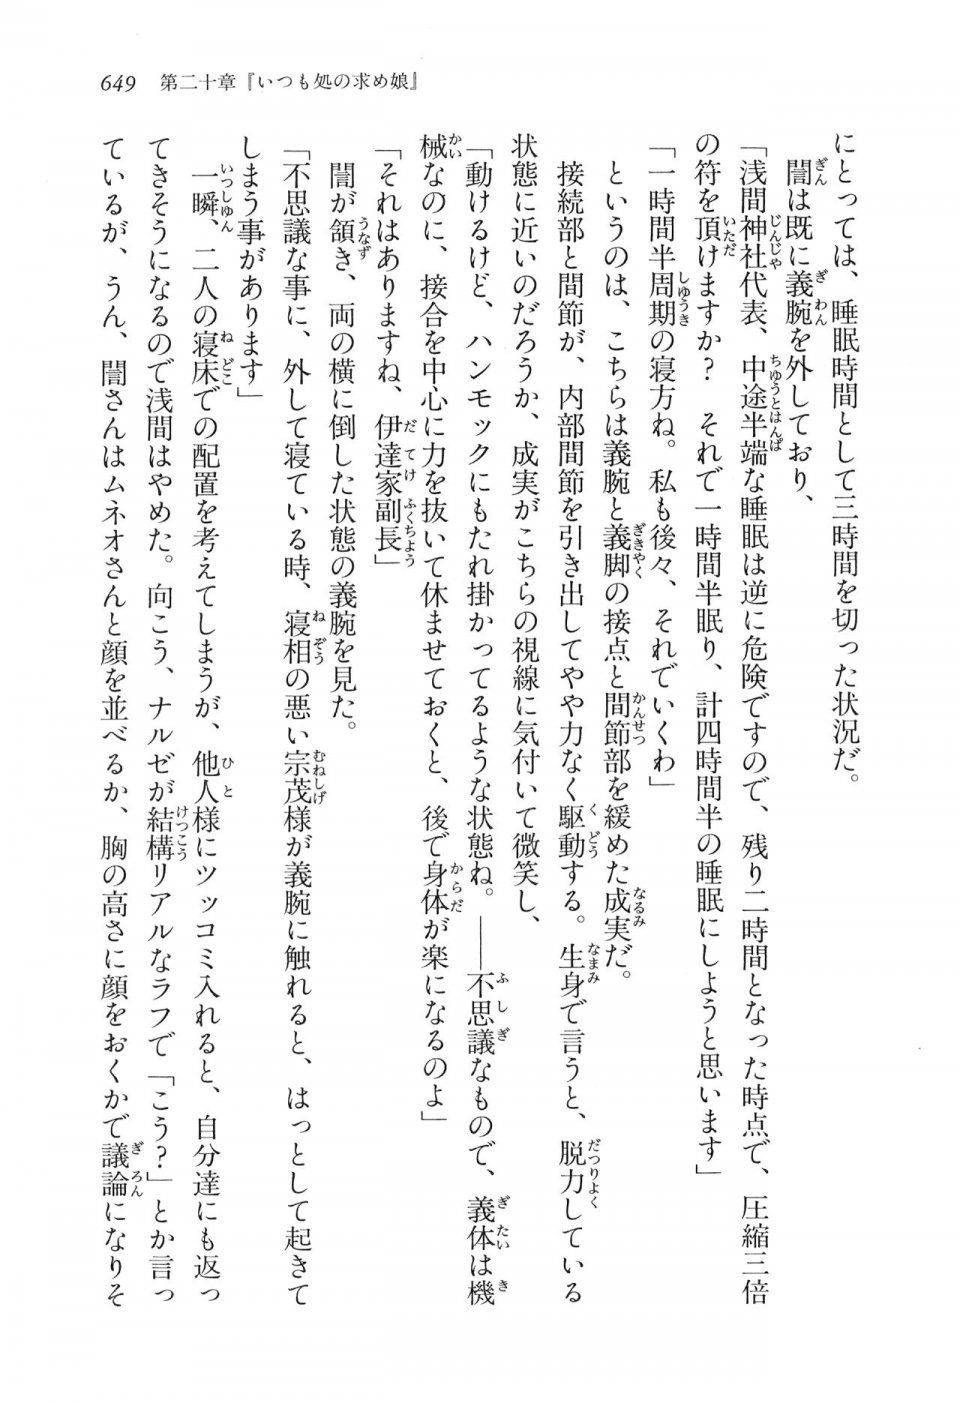 Kyoukai Senjou no Horizon LN Vol 16(7A) - Photo #649